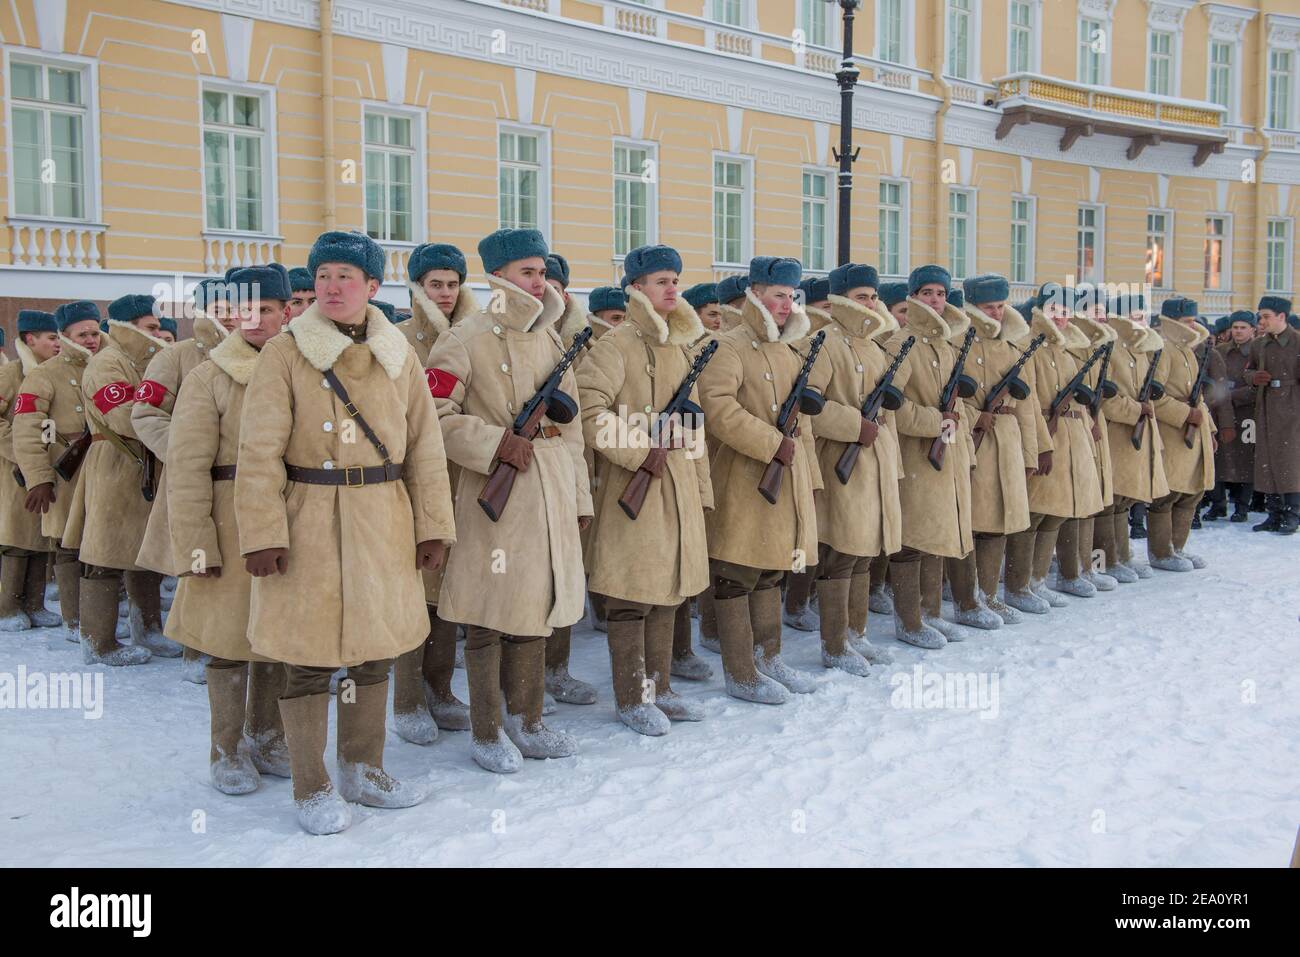 SAN PIETROBURGO, RUSSIA - 24 GENNAIO 2019: Soldati in uniforme invernale durante la Grande Guerra Patriottica nelle file. Prova della parata militare Foto Stock